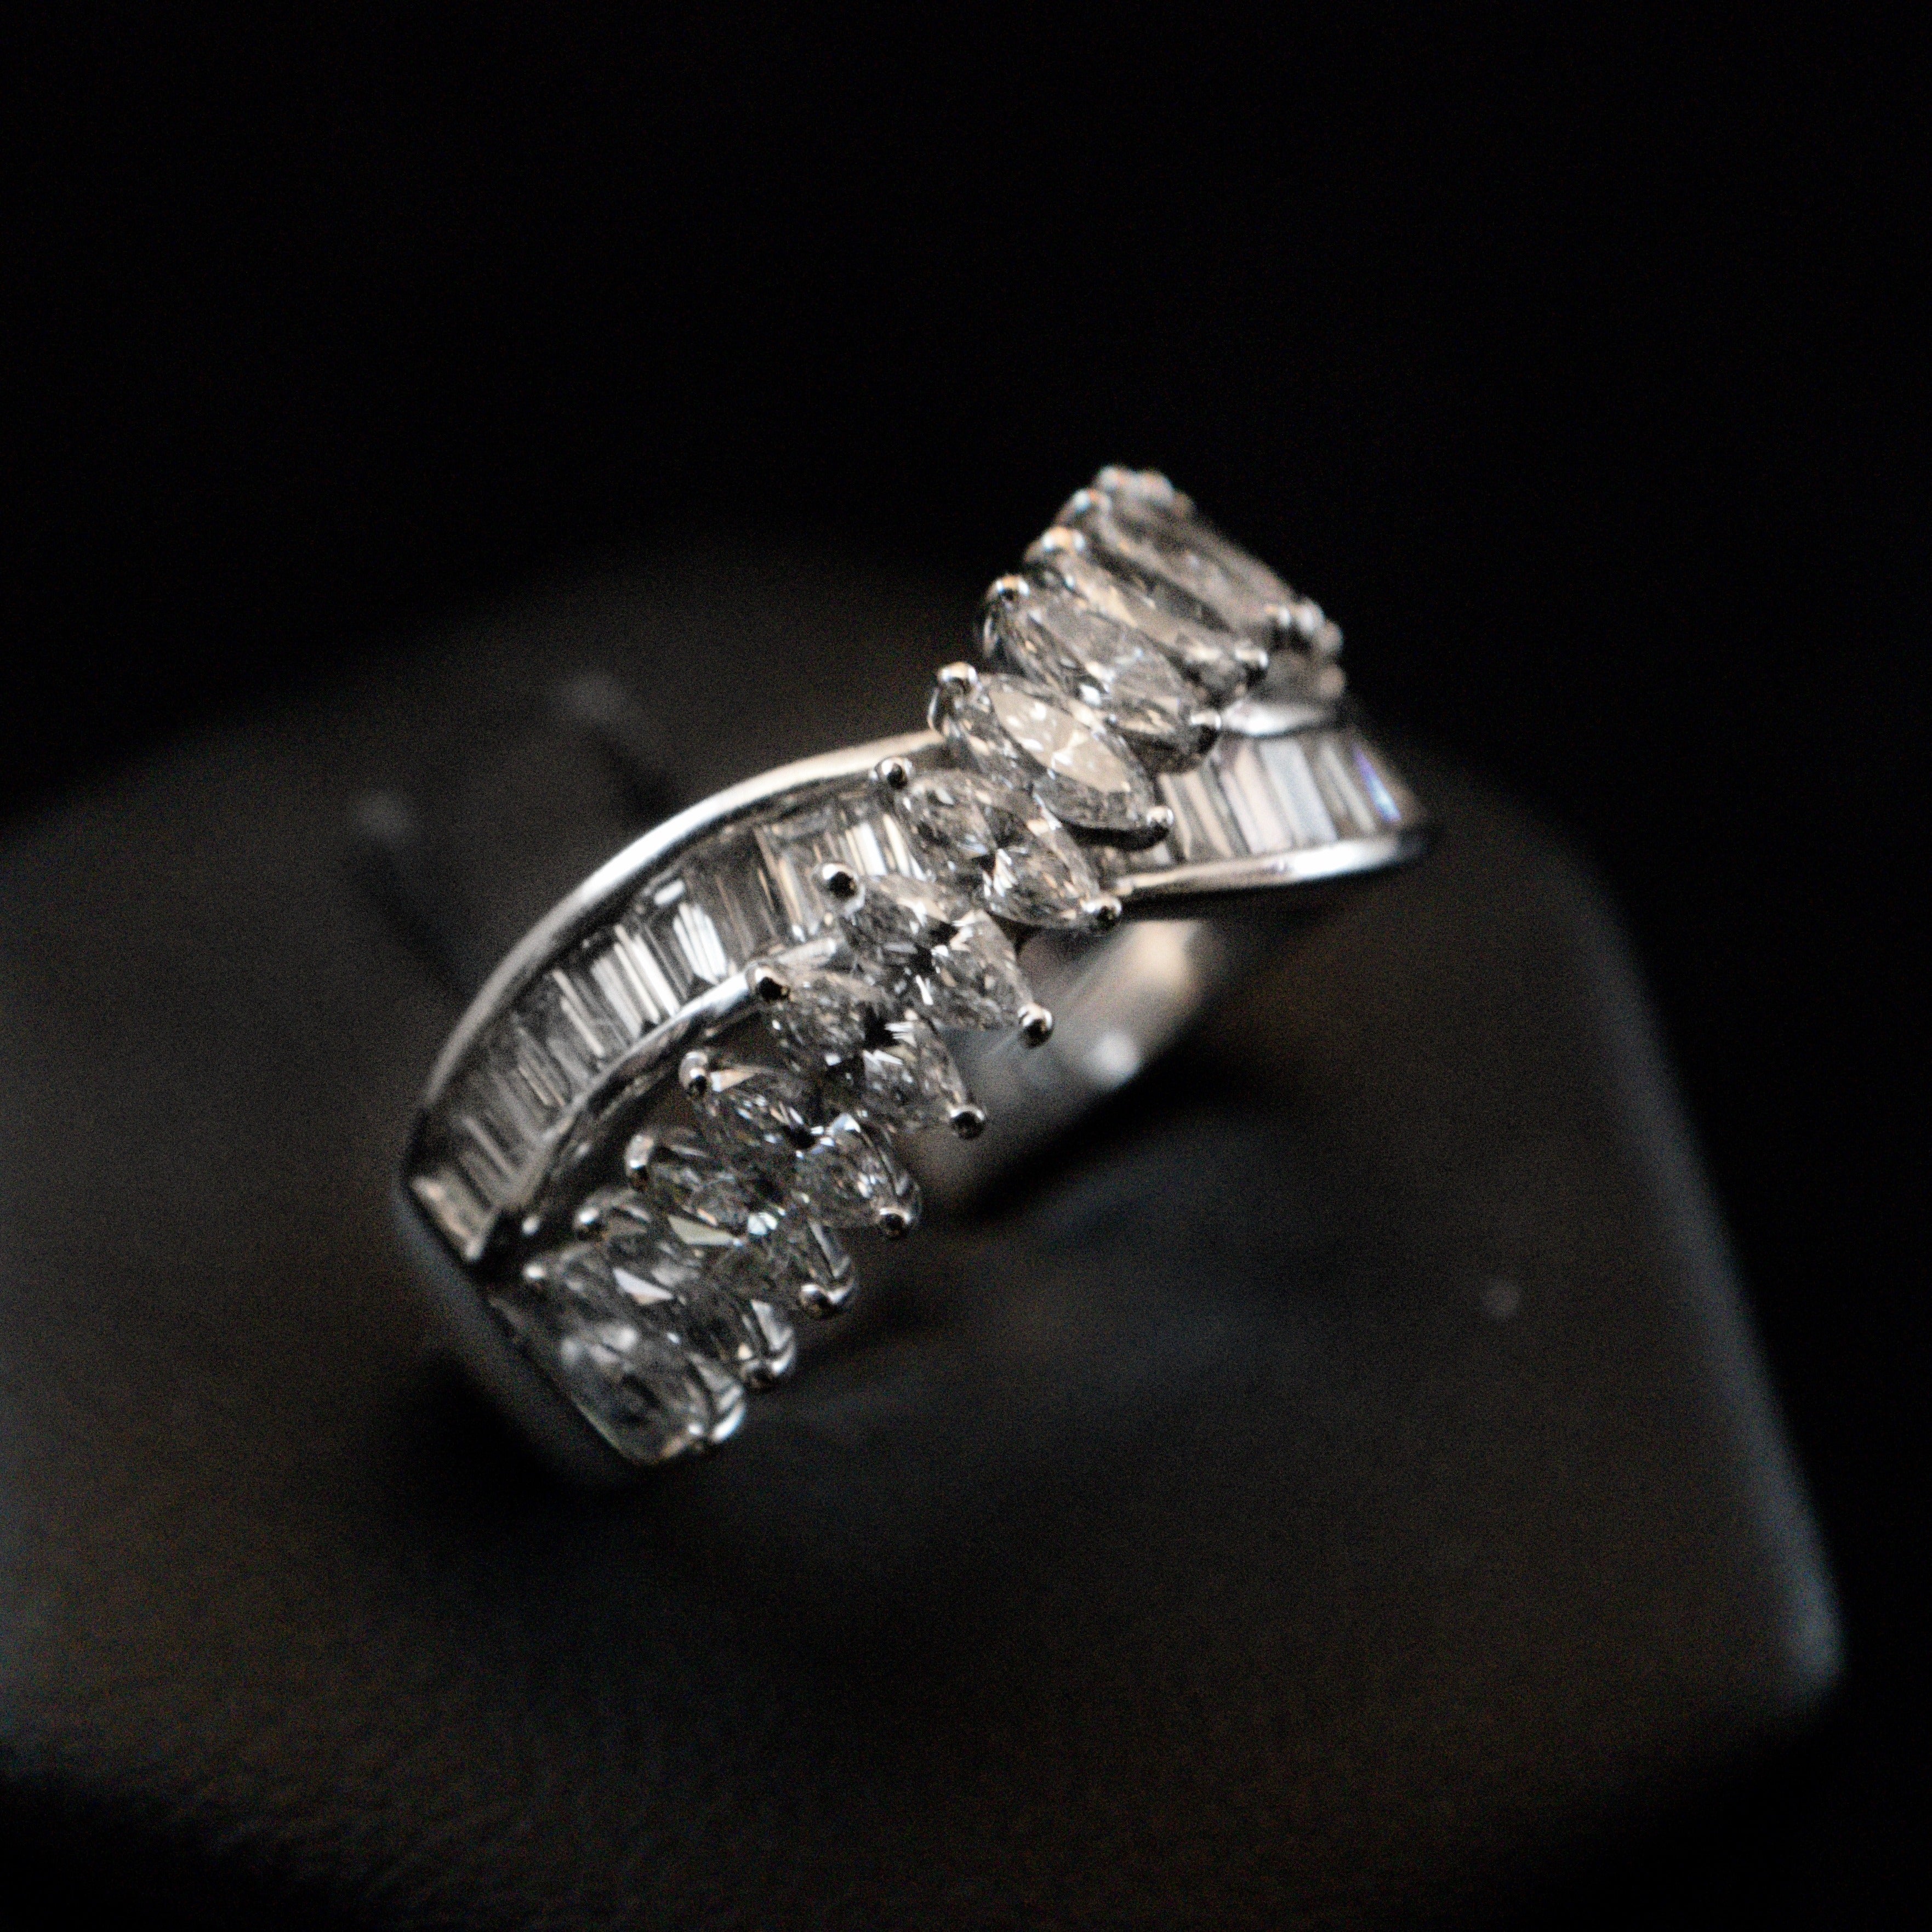 Anello diamanti taglio navette e baguette 1.1 carati - Gioielleria Tomaselli